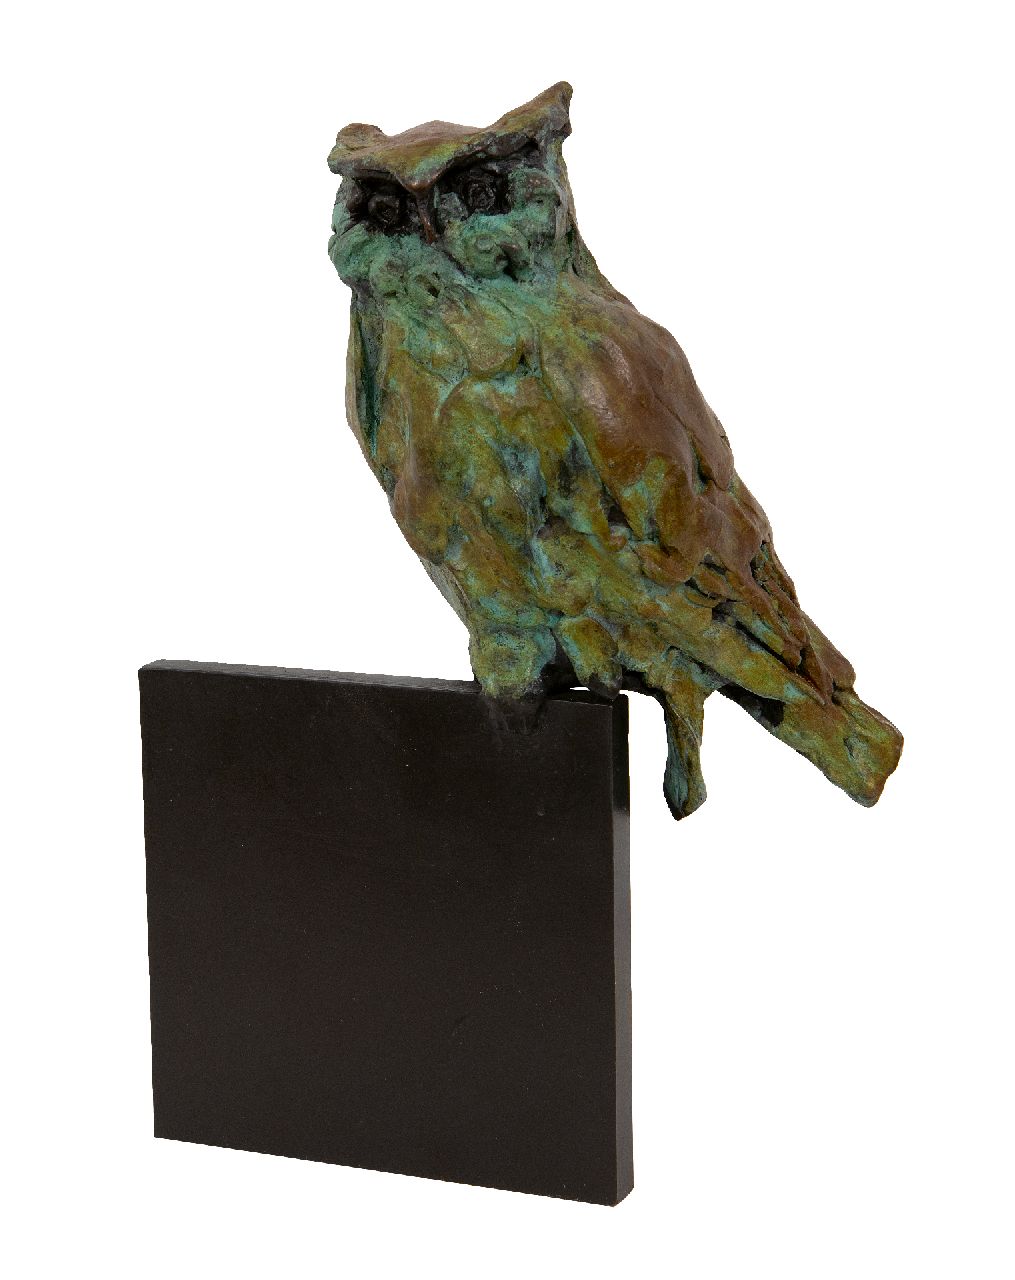 Laan J. van der | Jacqueline van der Laan | Beelden en objecten te koop aangeboden | Rustende oehoe, gepatineerd brons 21,0 x 14,0 cm, gesigneerd gemonogrammeerd achterzijde